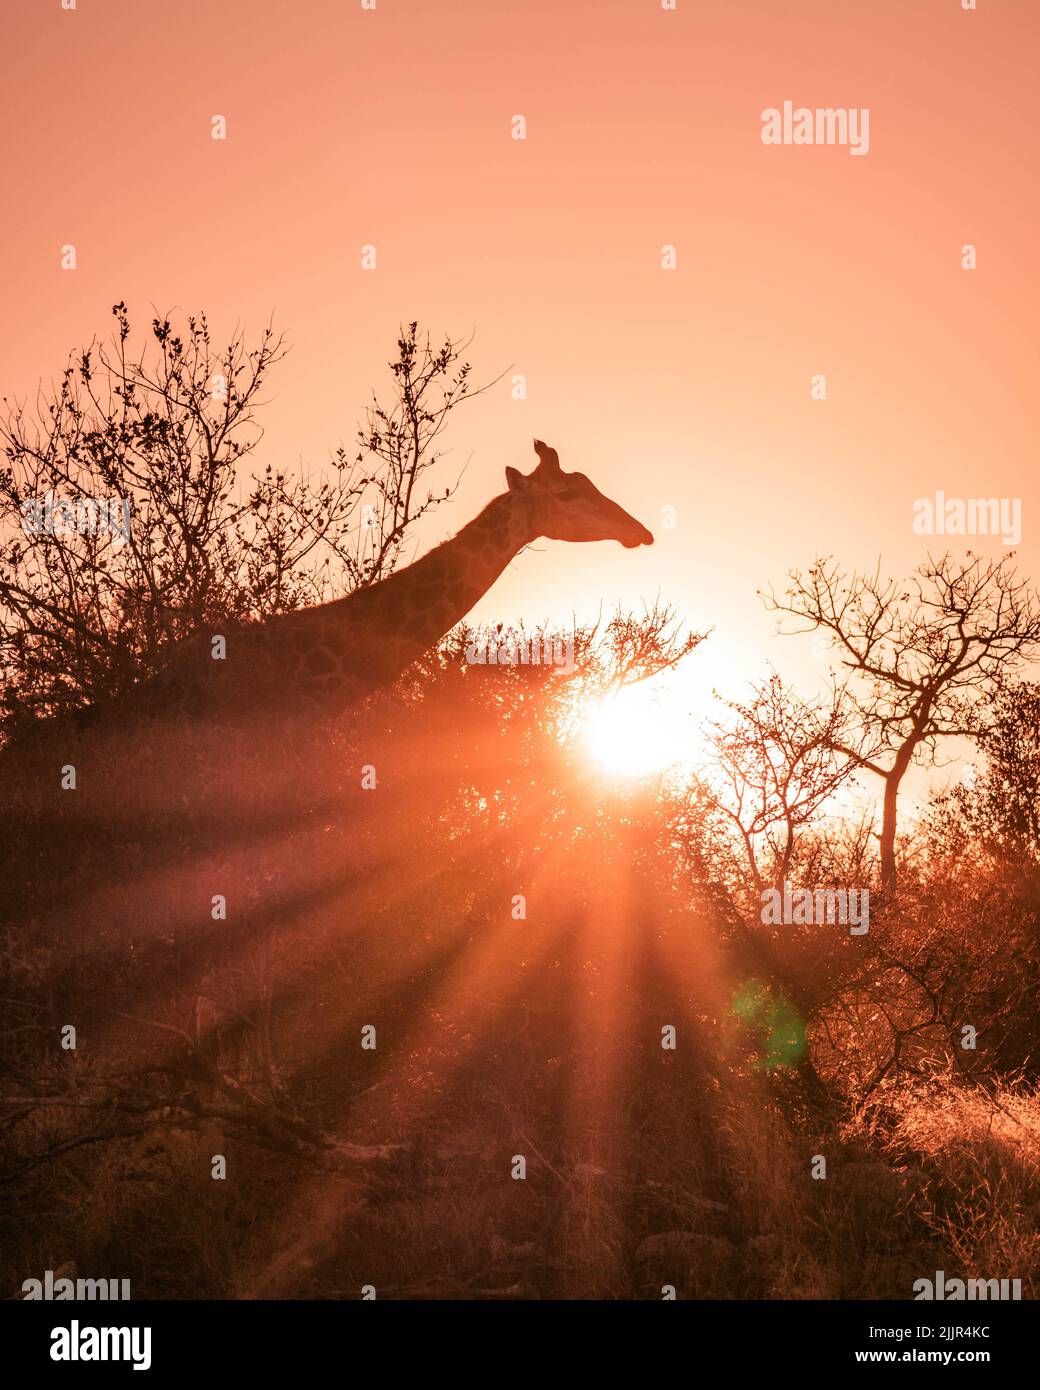 https://c8.alamy.com/compfr/2jjr4kc/un-cliche-vertical-d-une-girafe-dans-la-savane-d-afrique-du-sud-et-les-rayons-du-soleil-eclatant-2jjr4kc.jpg